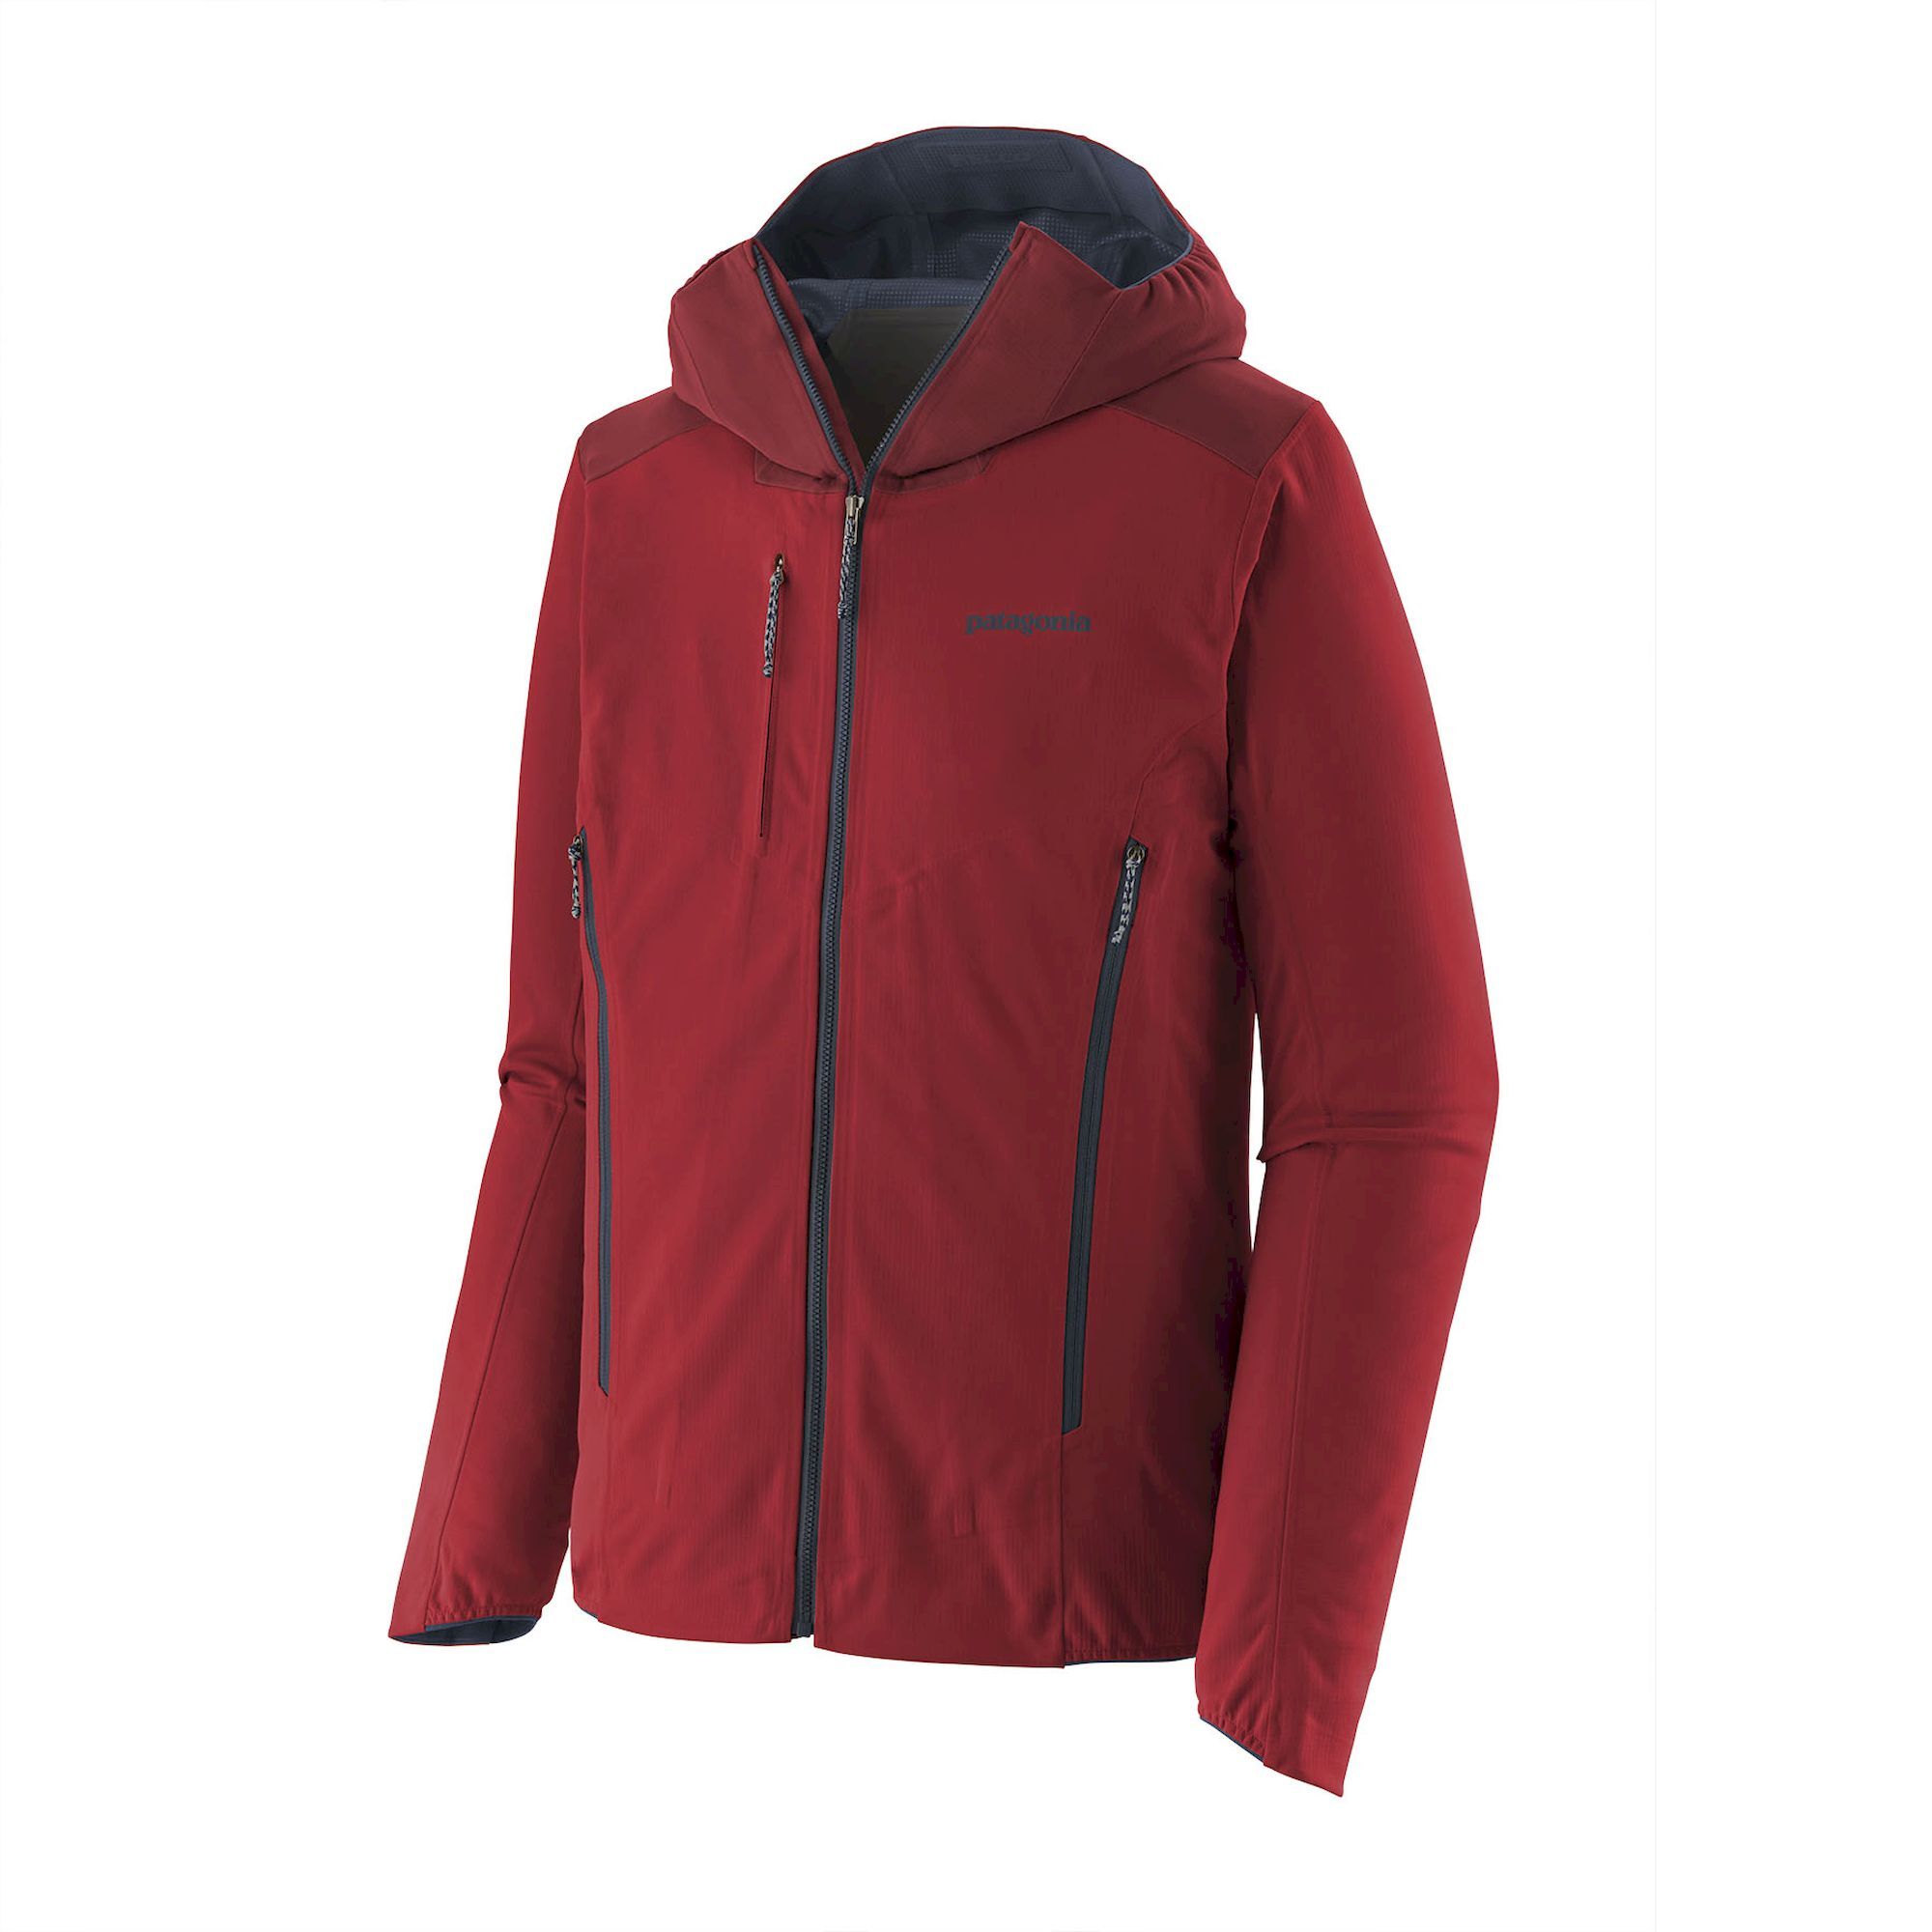 Patagonia Upstride Jacket - Ski jacket - Men's